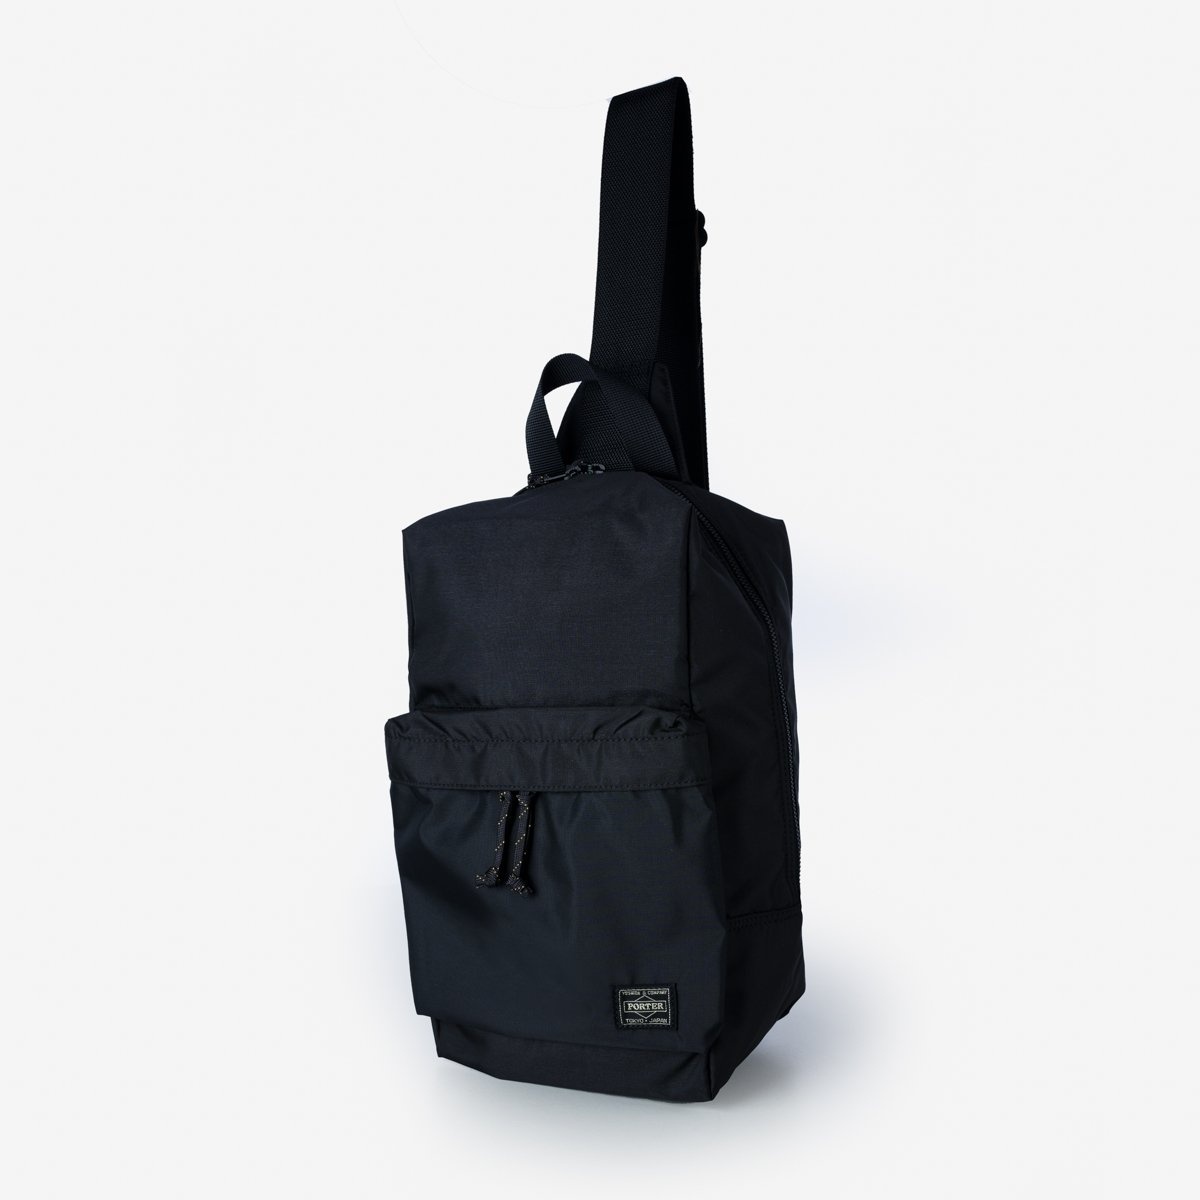 POR-FOR-SSB-BLK Porter - Yoshida & Co. - Force Sling Shoulder Bag - Black - 1